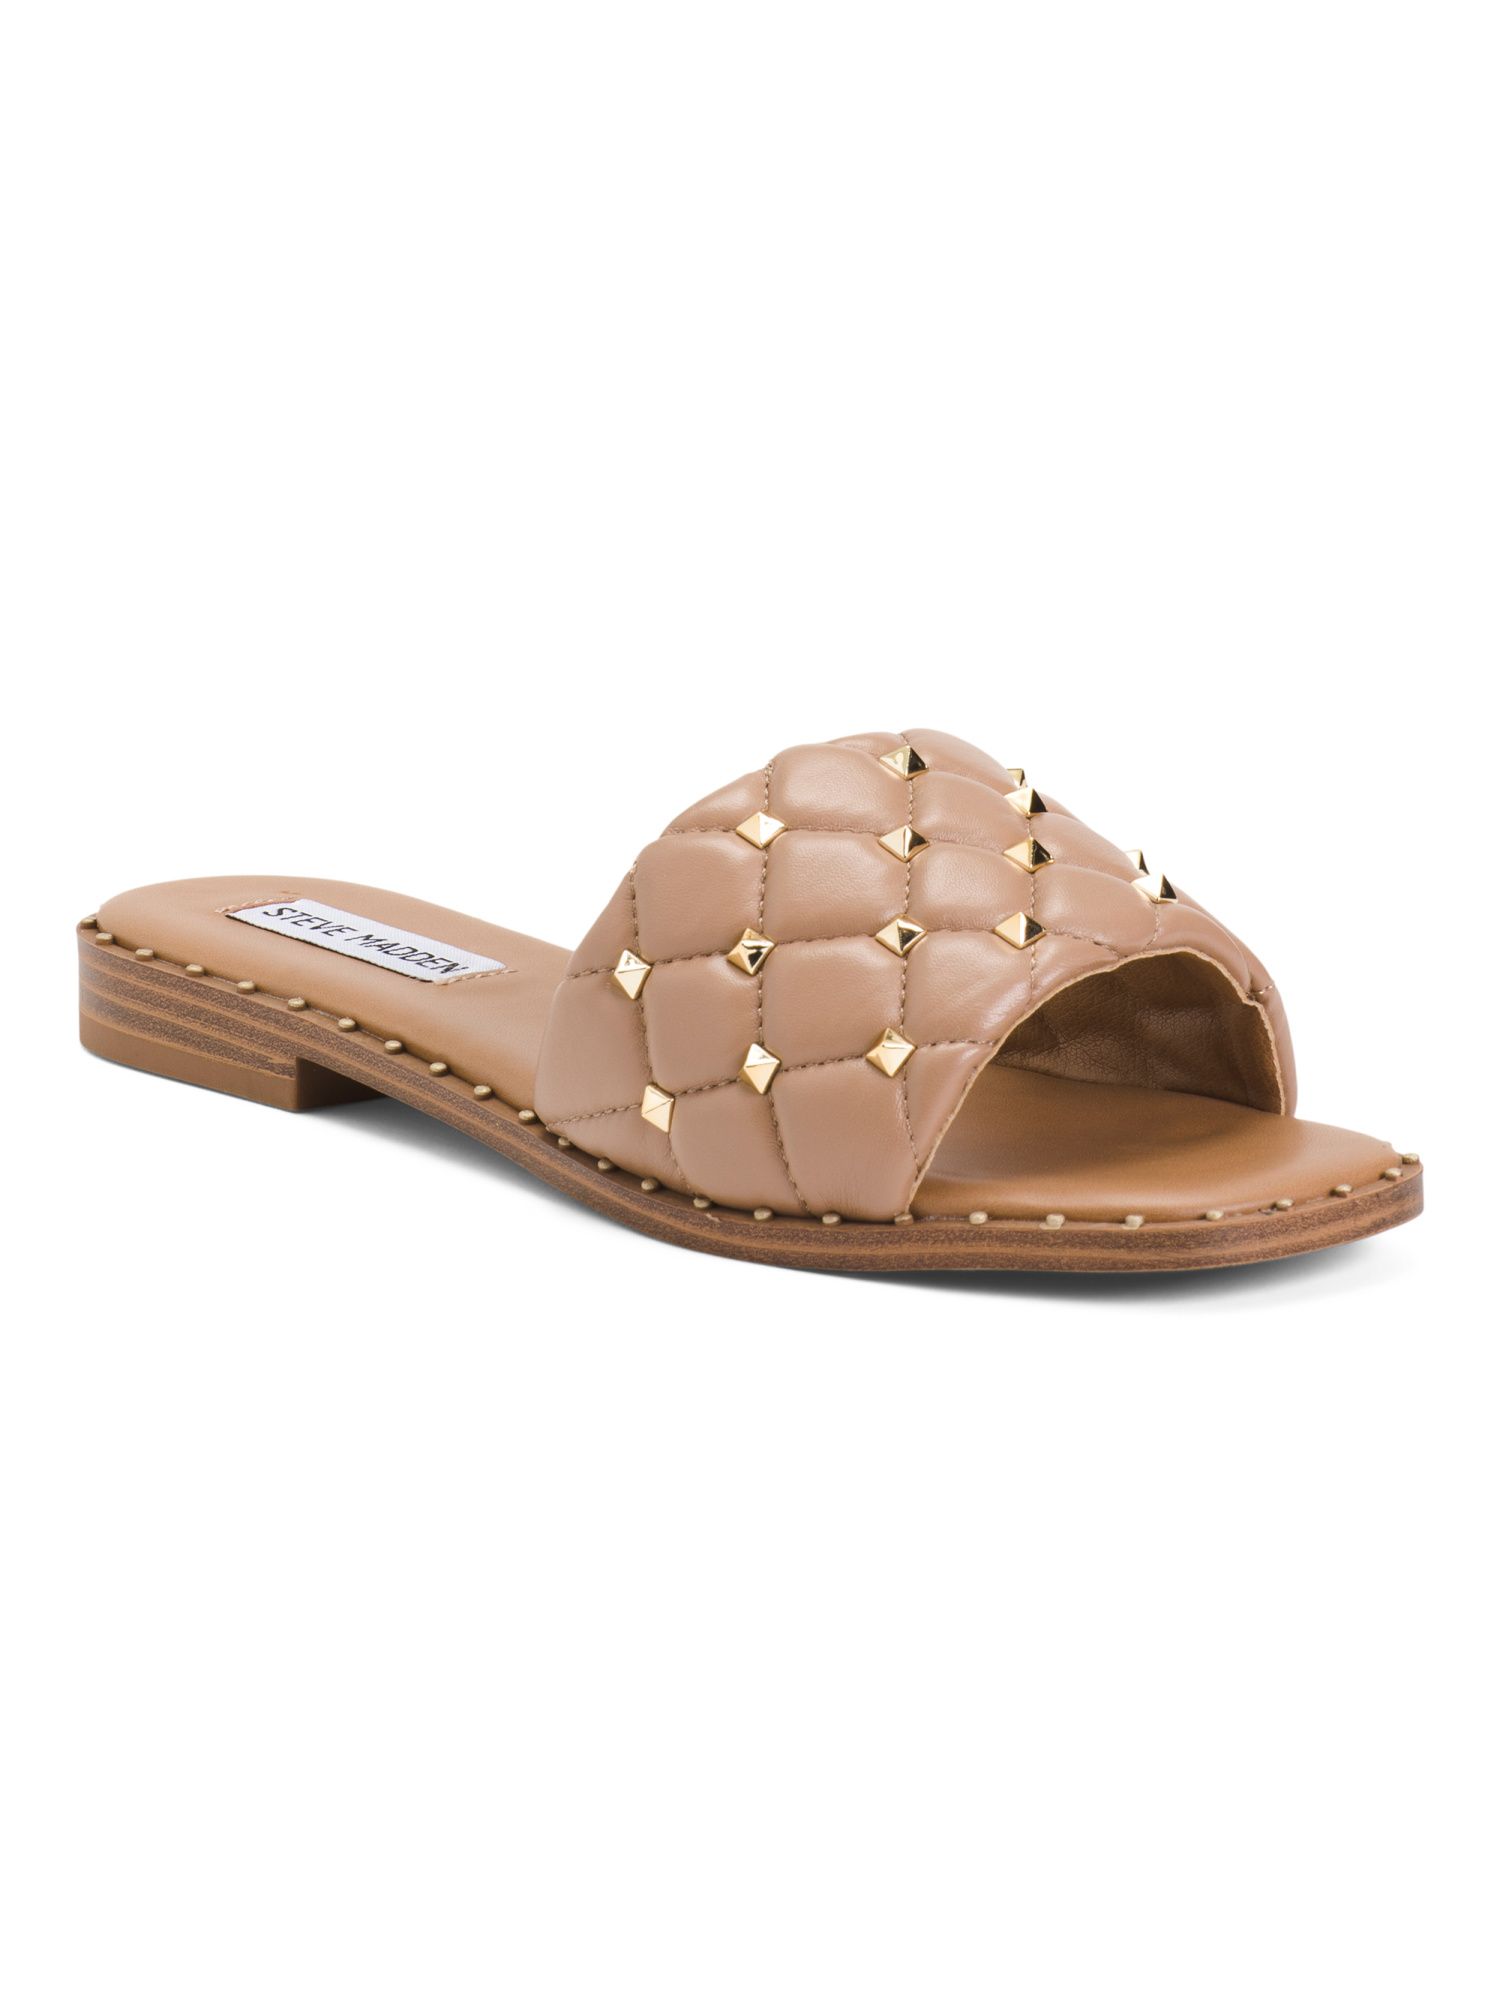 Padded Embellishment Studded Flat Sandals | TJ Maxx